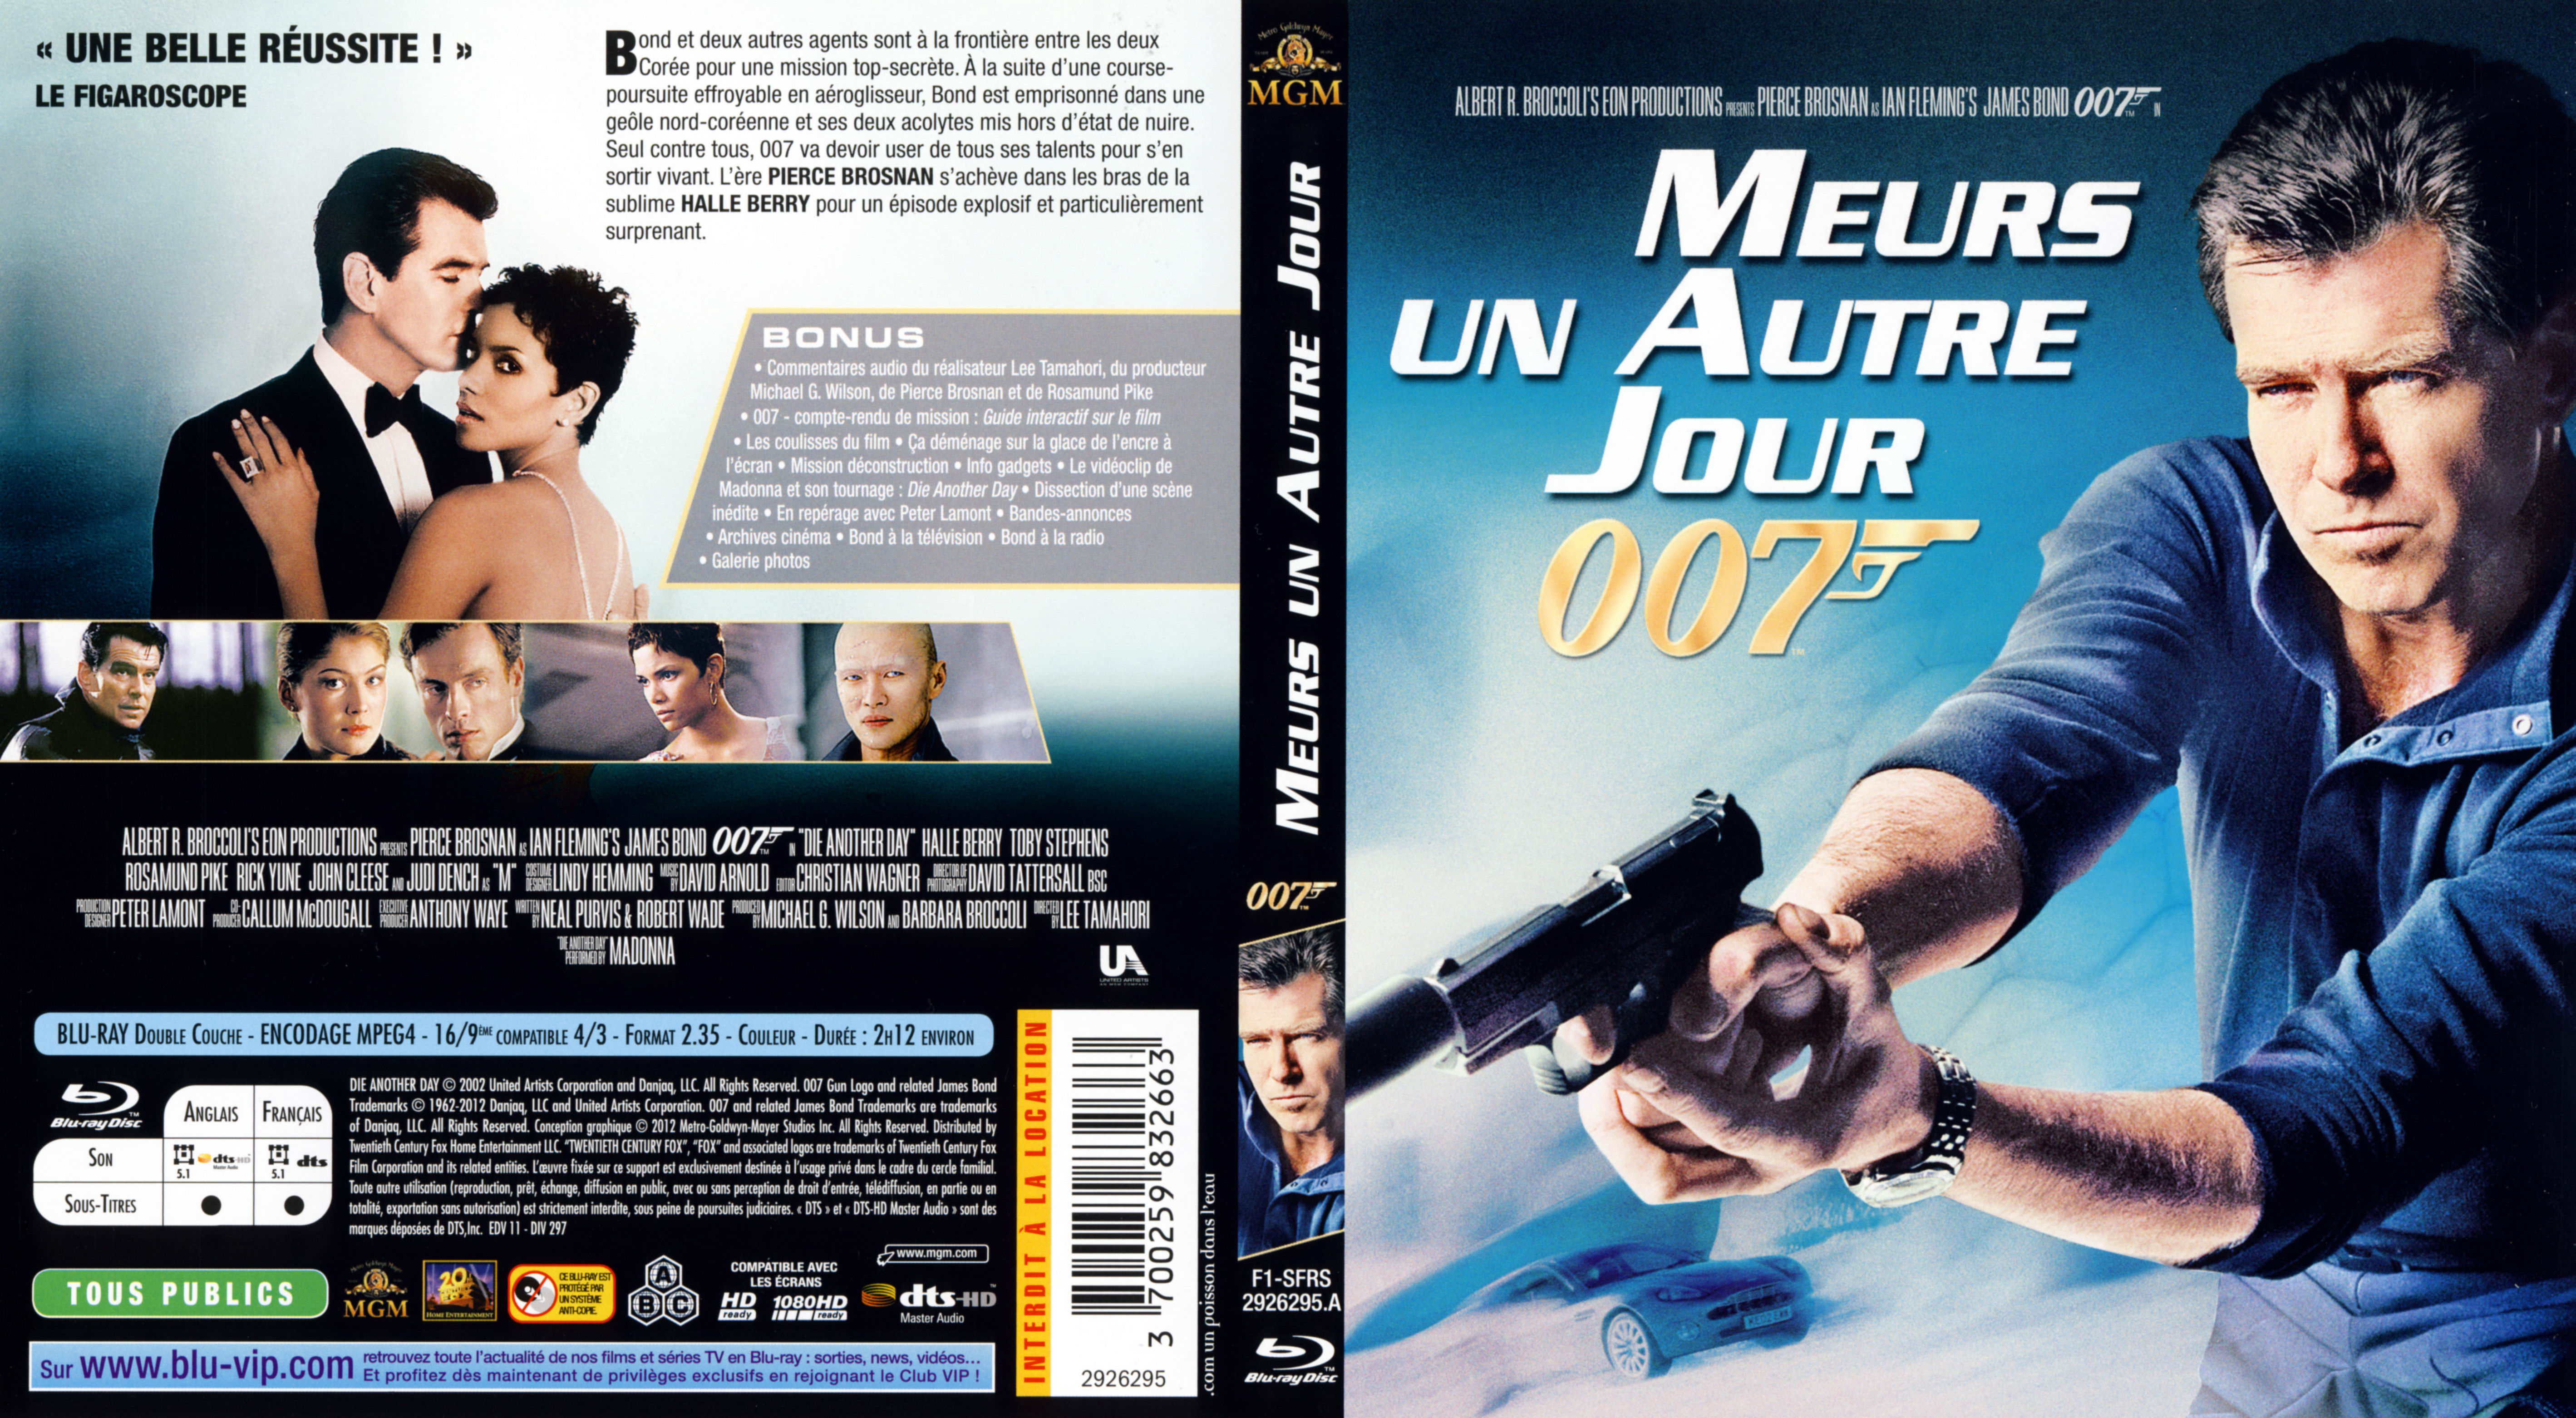 Jaquette DVD James Bond 007 Meurs un autre jour (BLU-RAY) v2